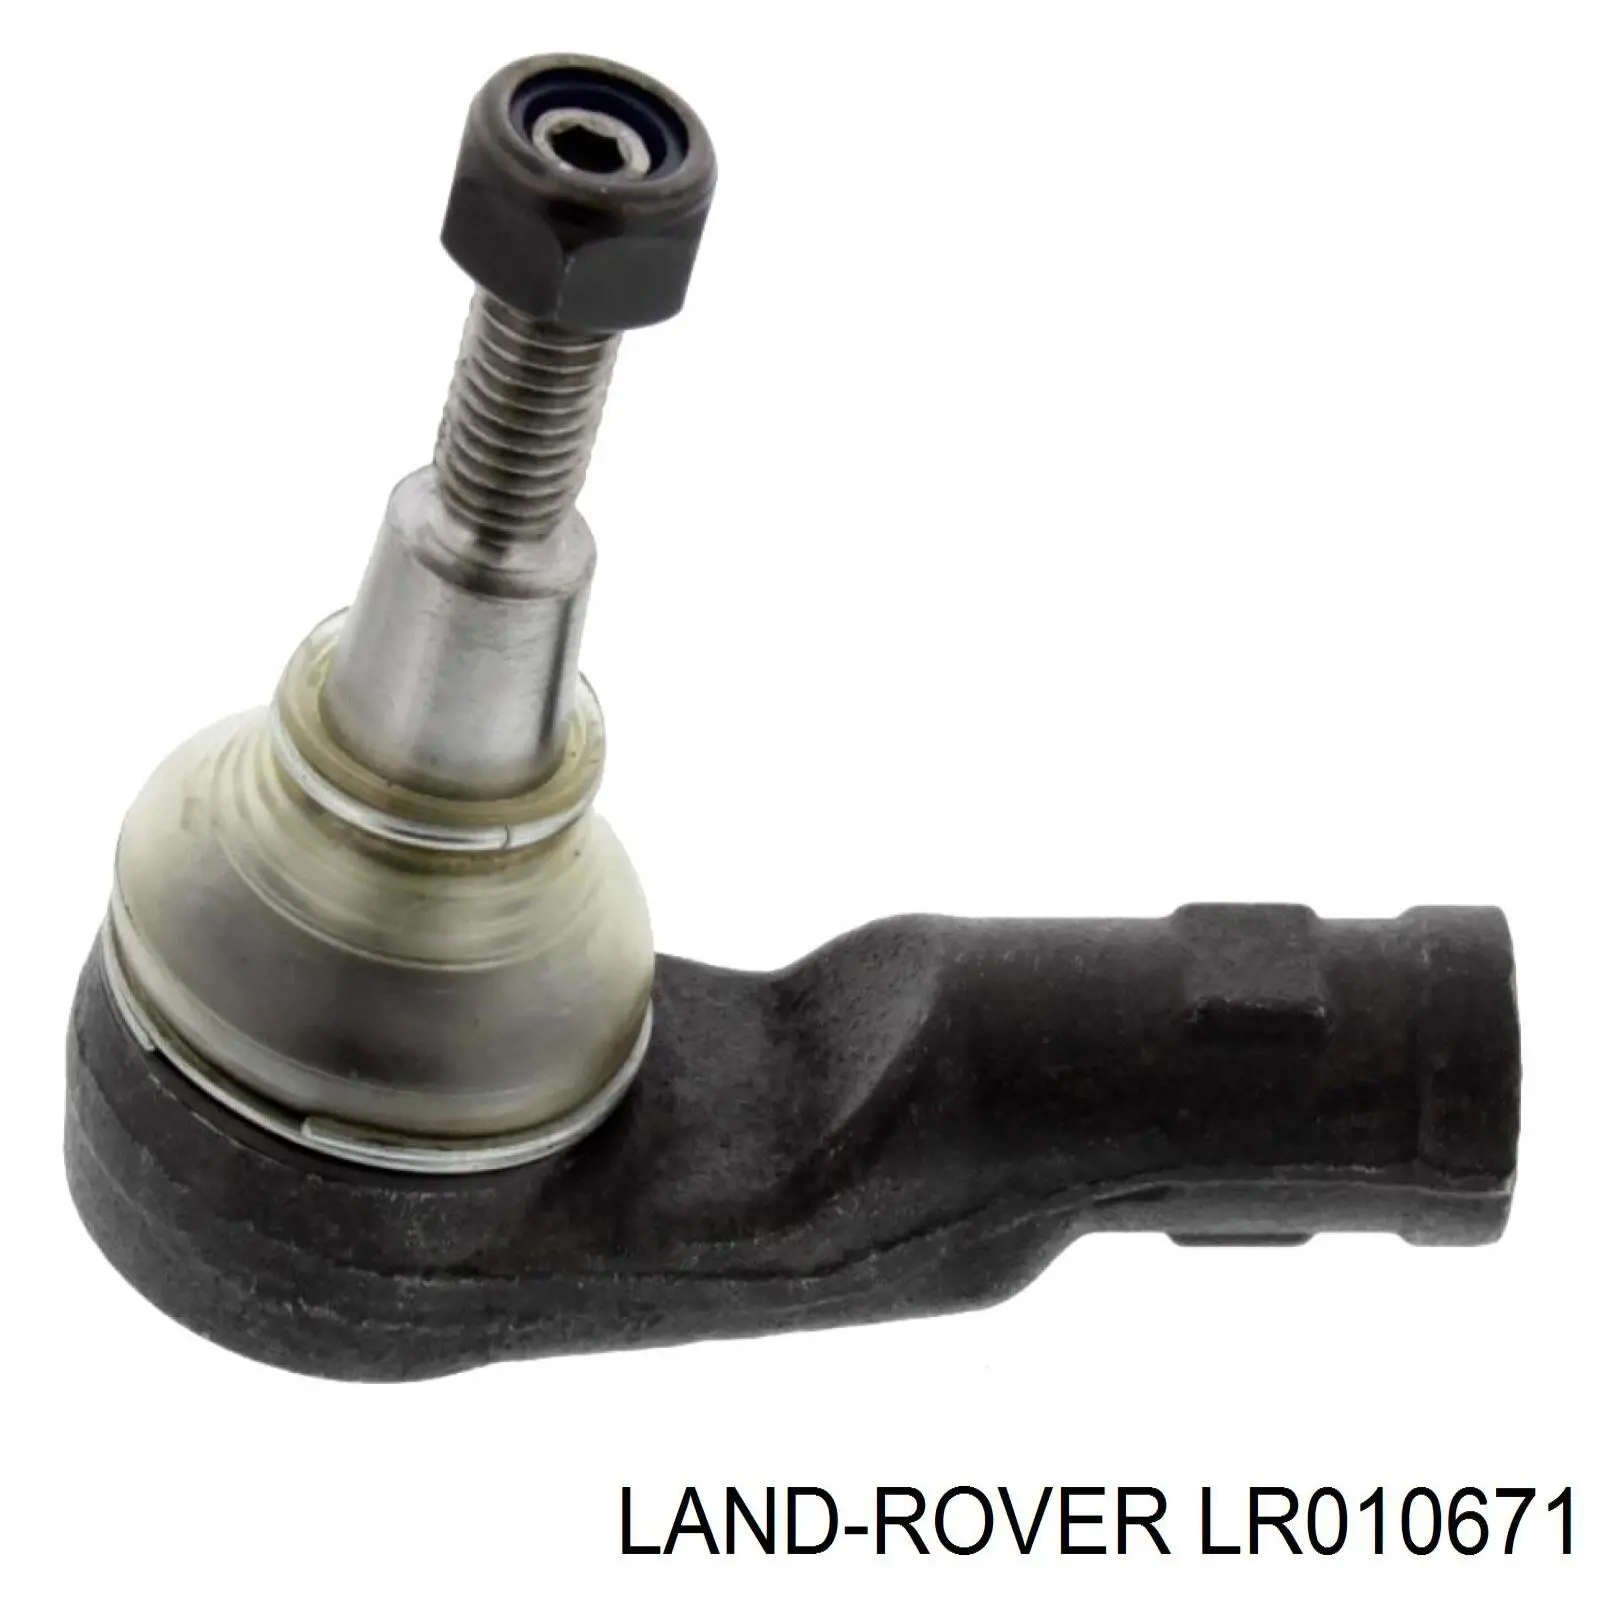 LR010671 Land Rover rótula barra de acoplamiento exterior